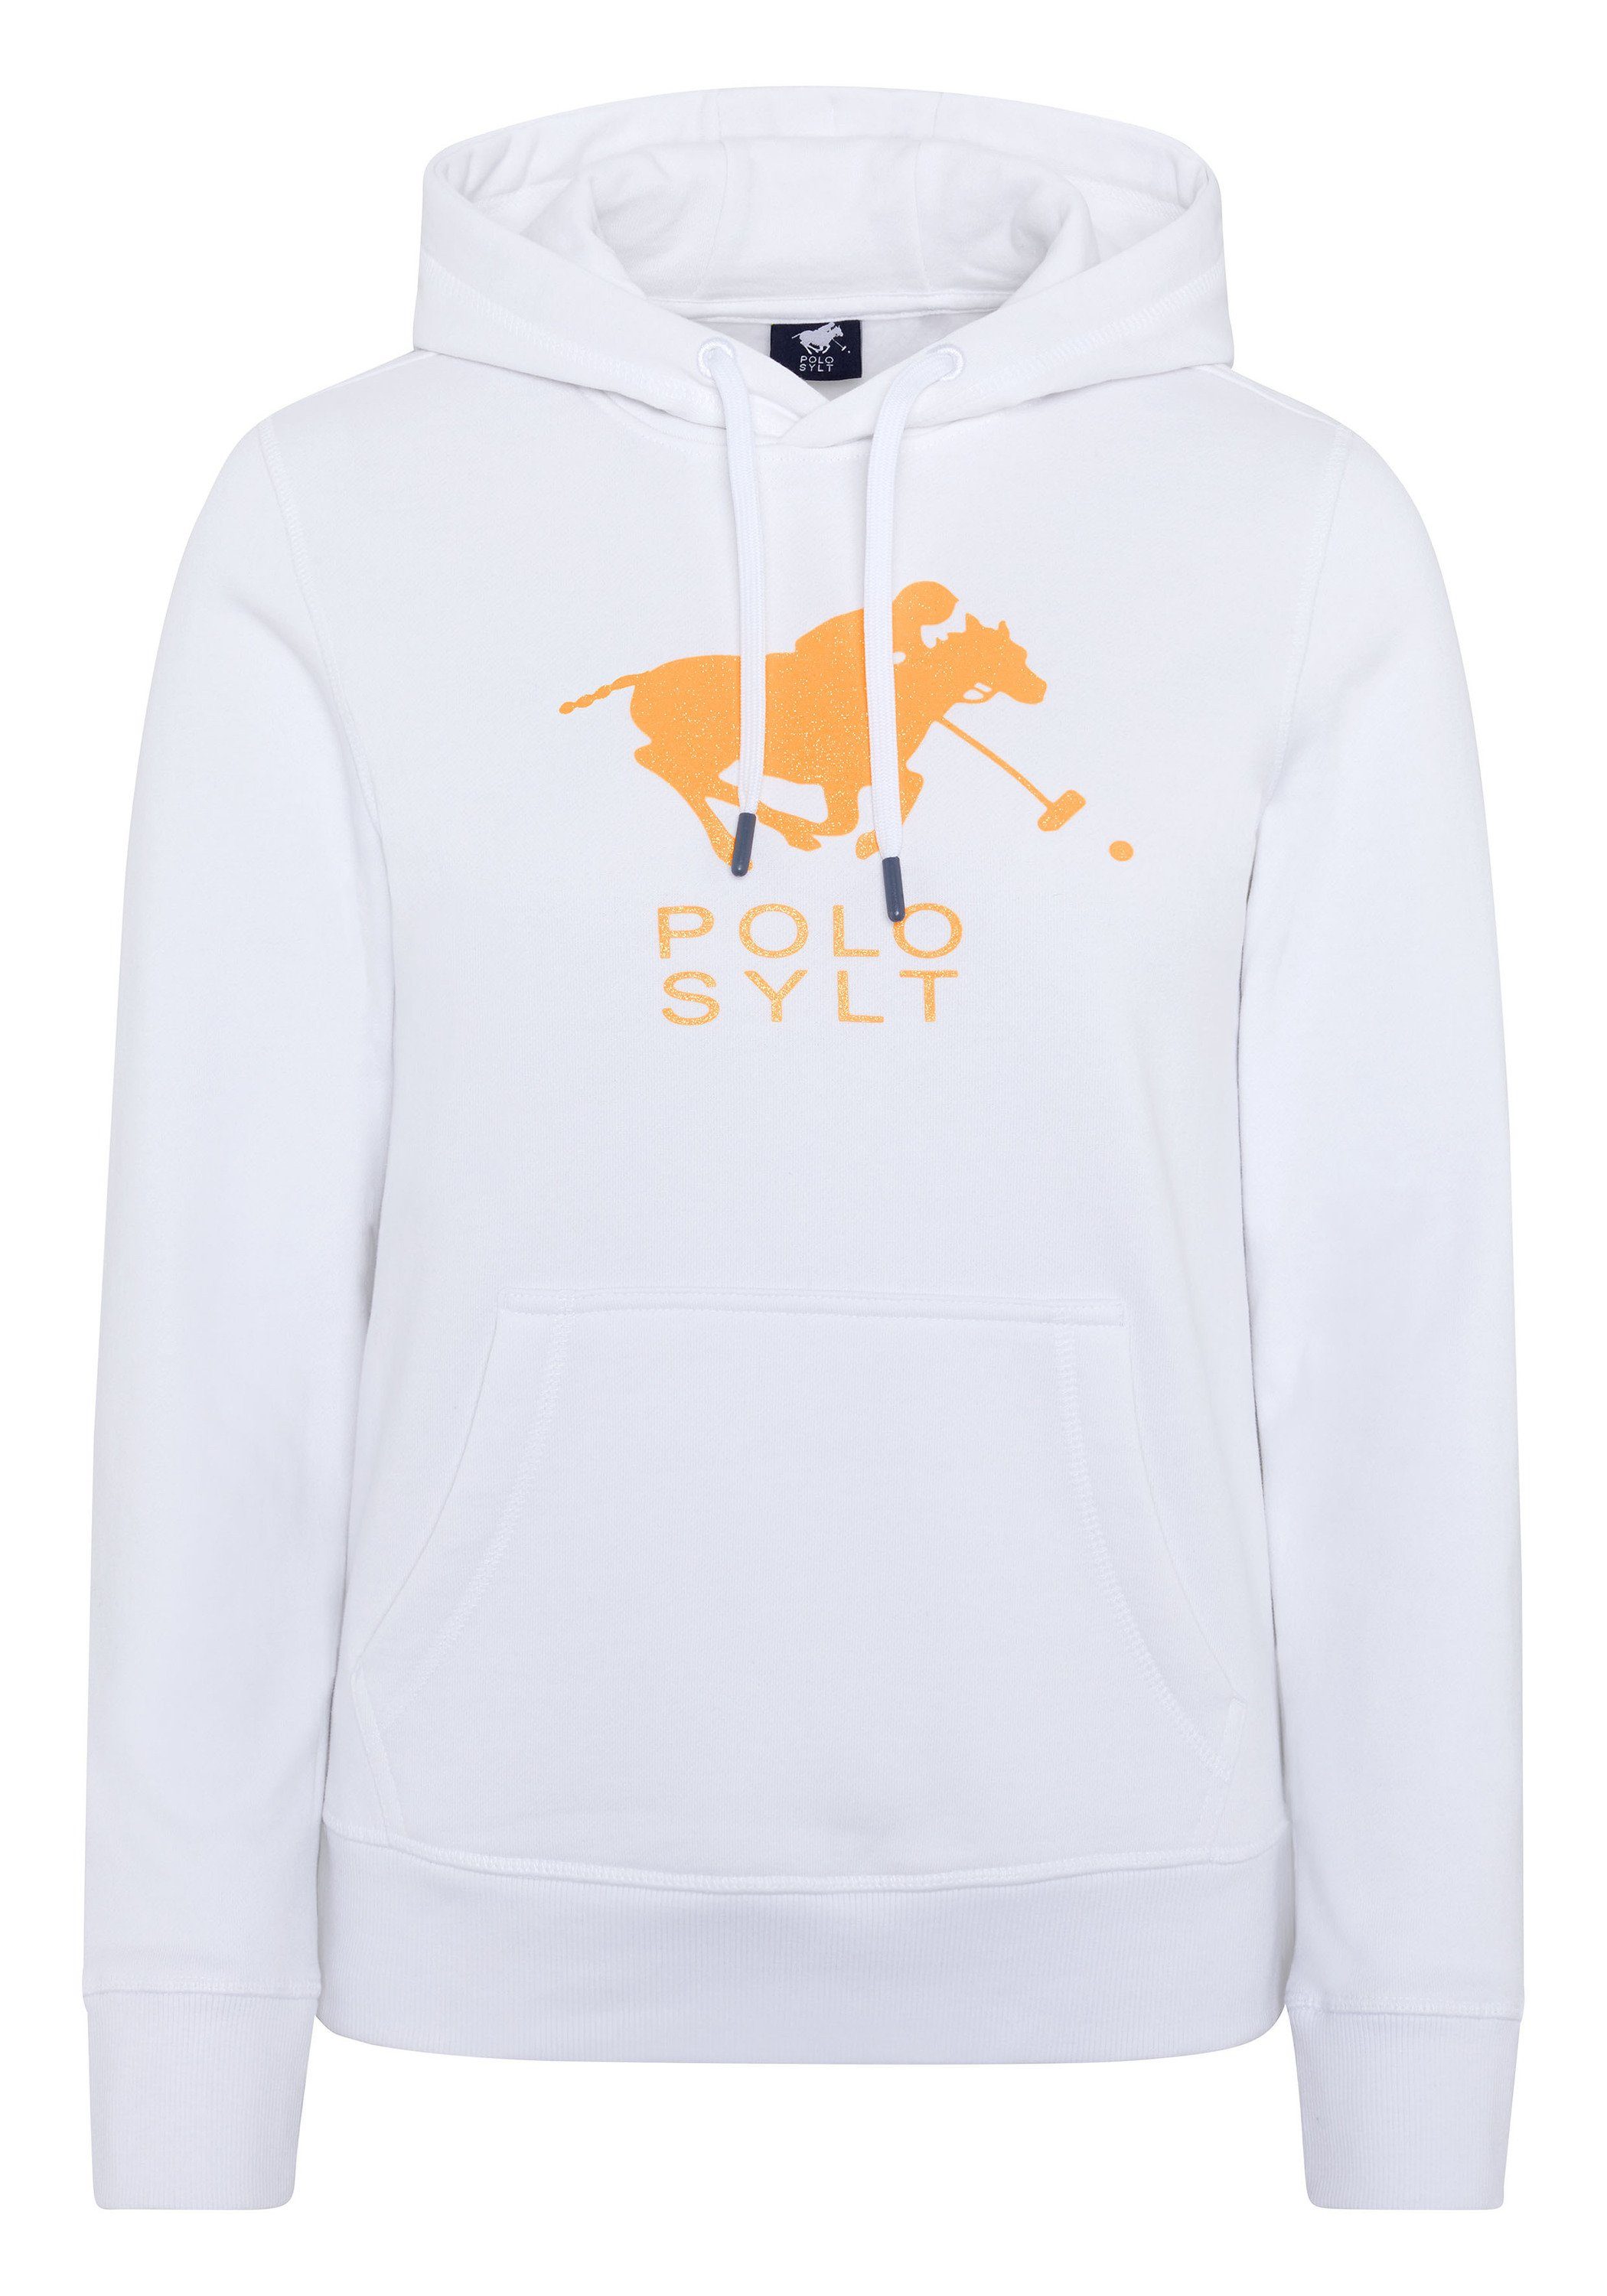 Polo Sylt Kapuzensweatshirt mit Polo Sylt Frontprint Bright White